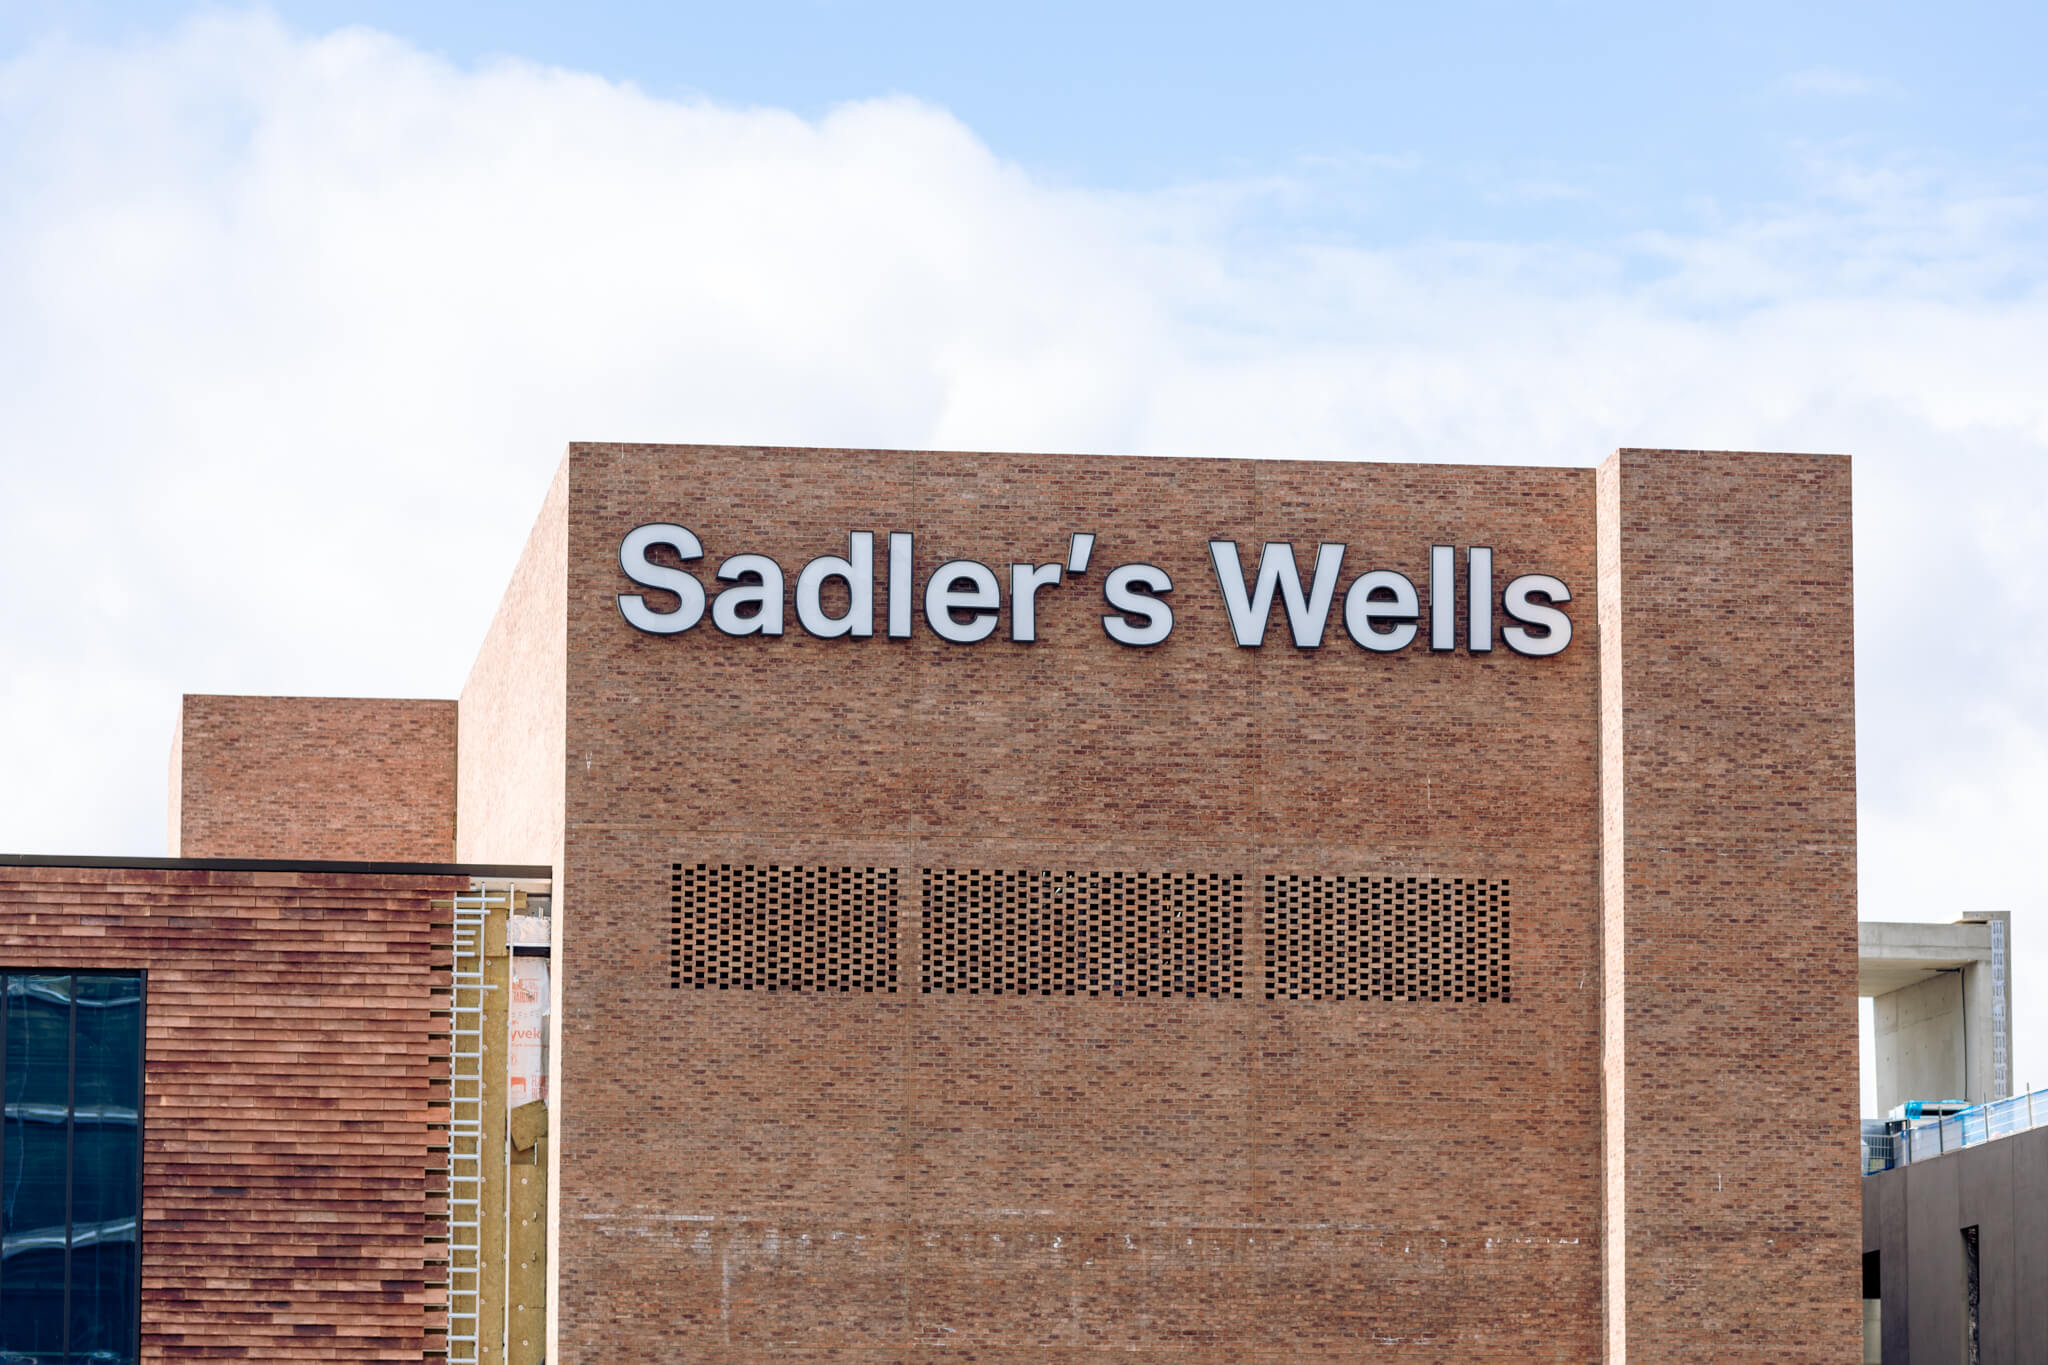 Sadler's Wells building at East Bank